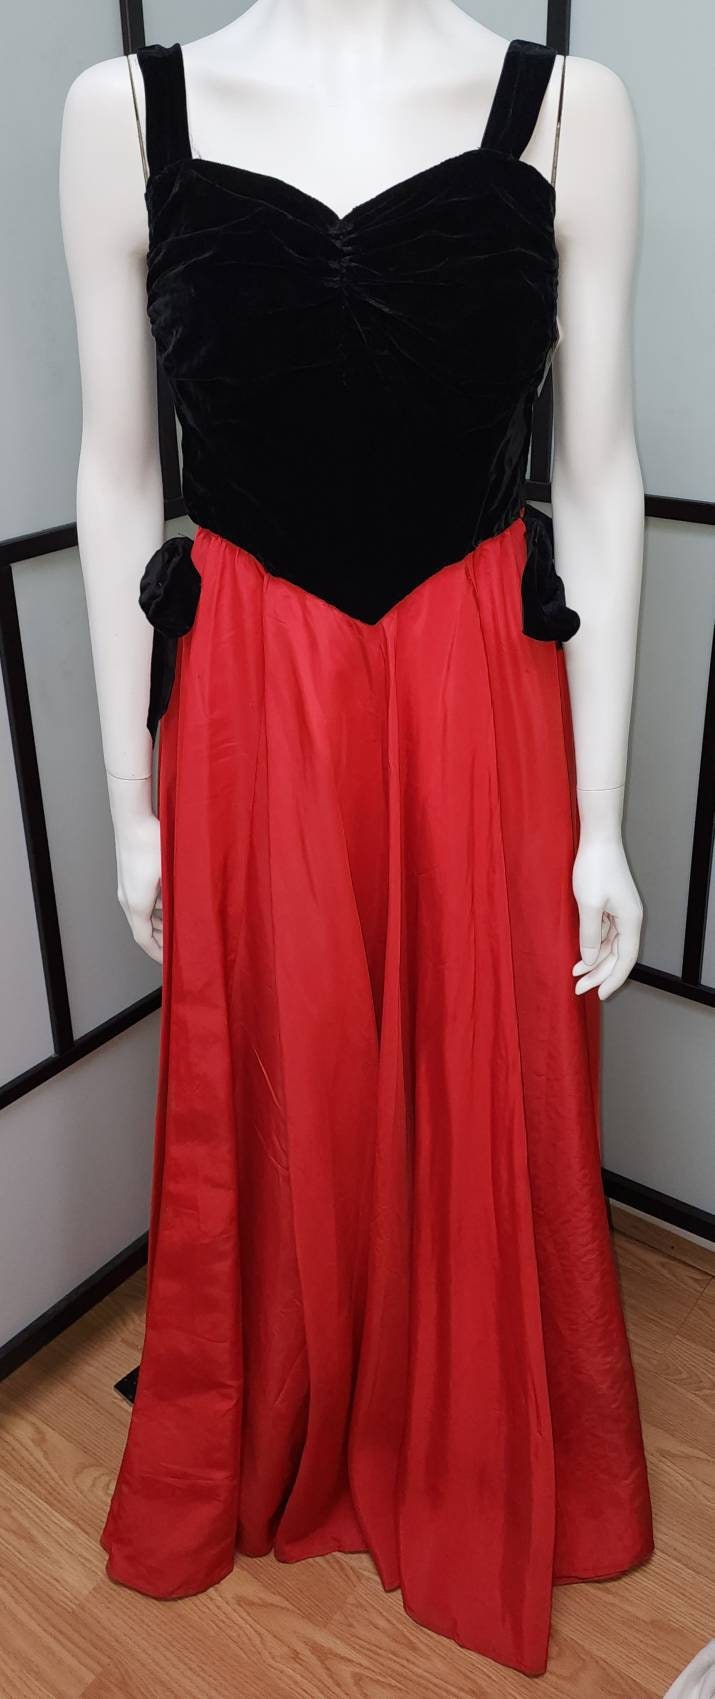 Vintage Long Gown 1940s 50s Black Velvet Sweetheart Bodice Long Red Taffeta Skirt Dress Mid Century Glamor Halloween Gothic Boho S